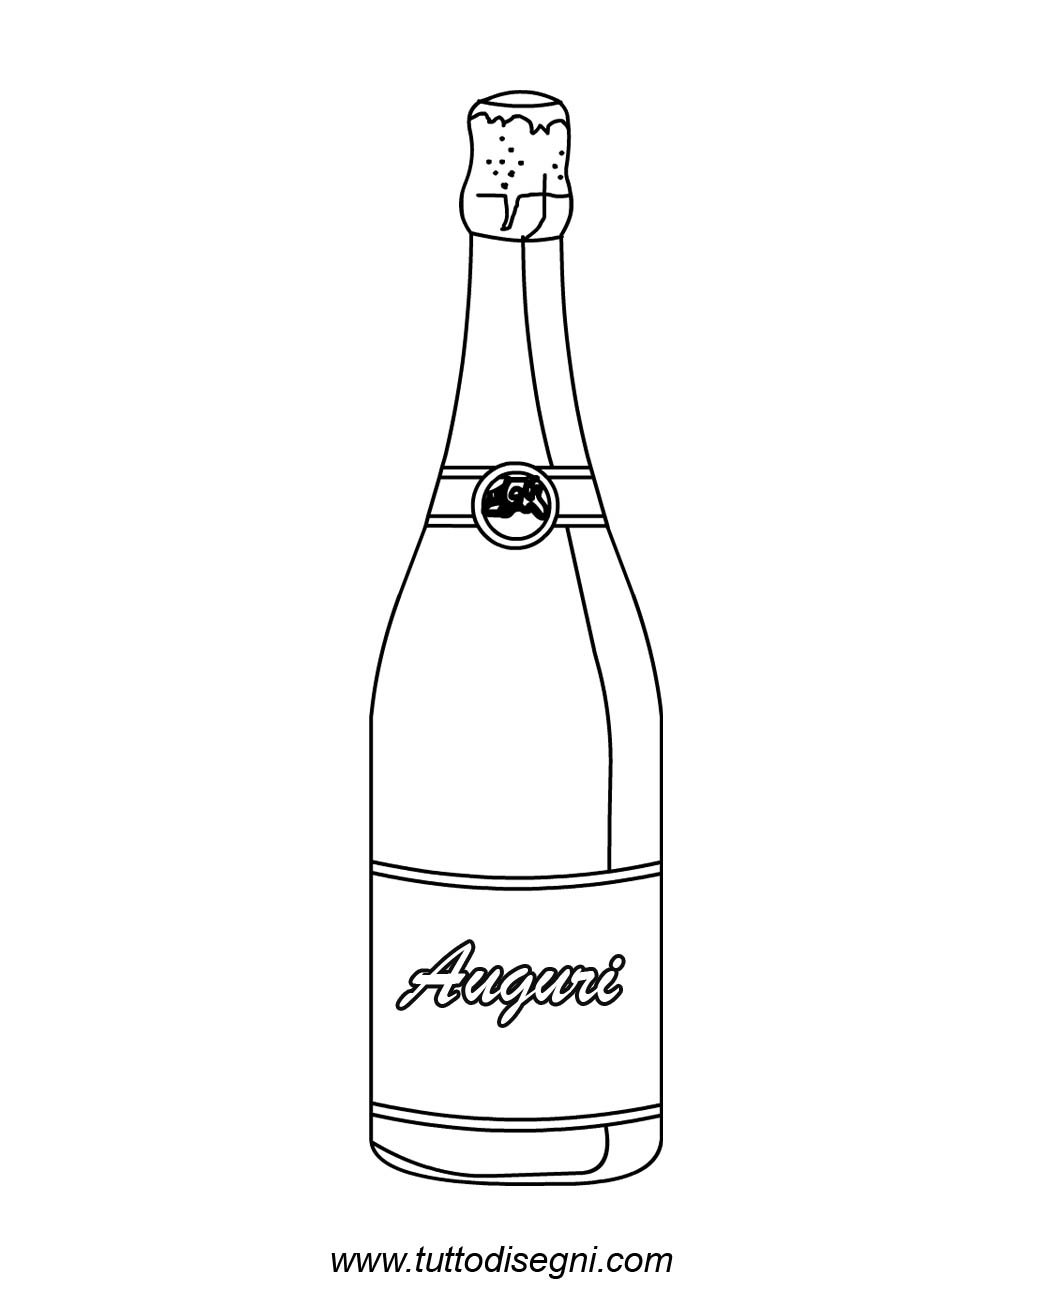 bottiglia champagne21